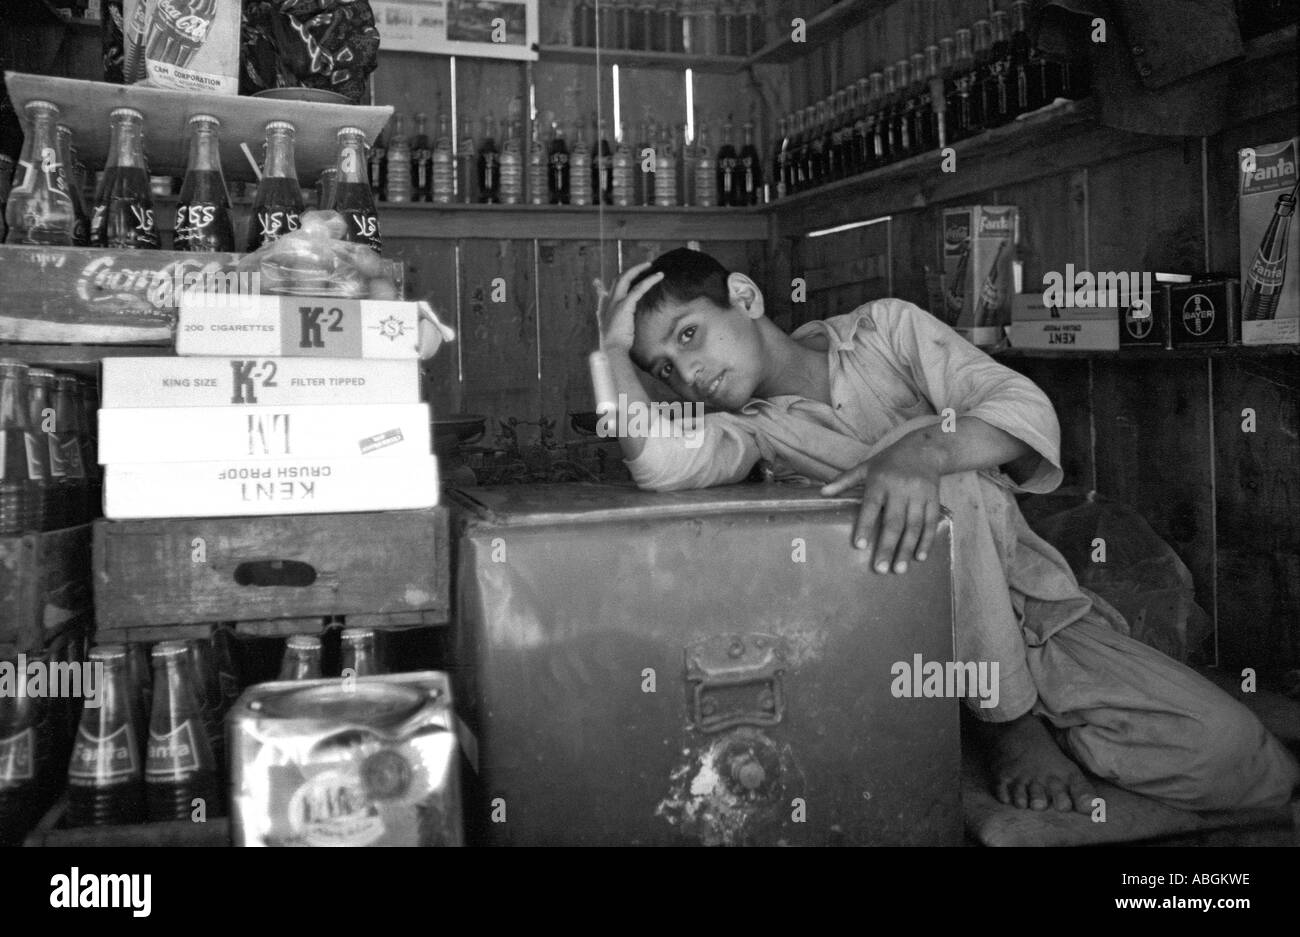 Boy shopkeeper, Balkh, Afghanistan Stock Photo